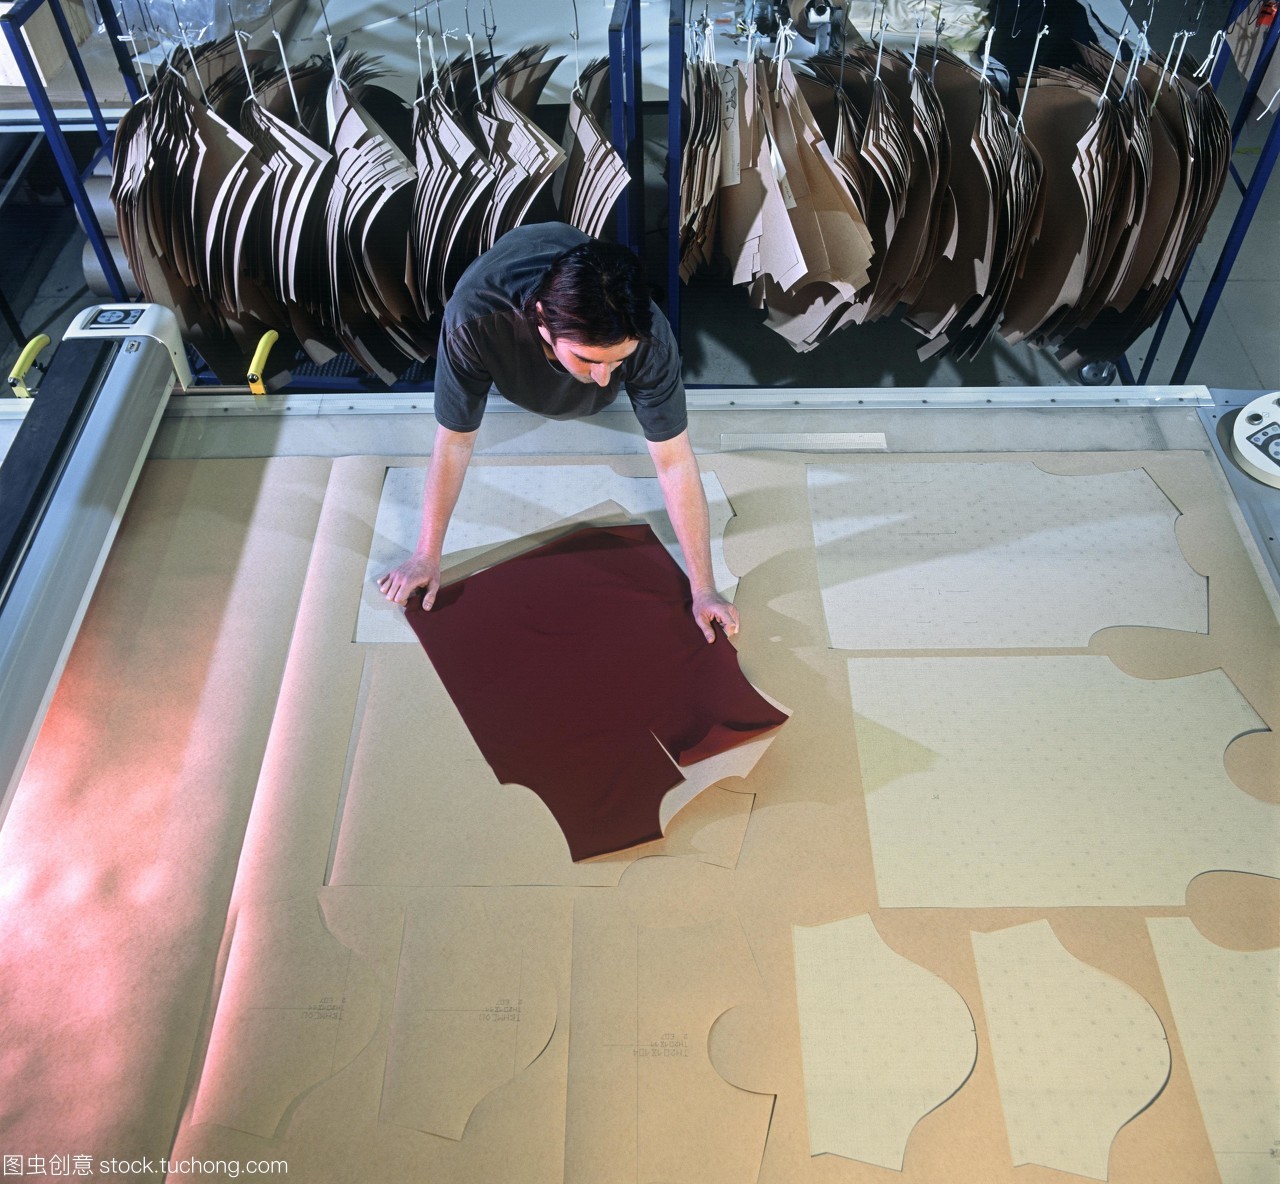 纺织工业。服装模板用于在纺织厂切出织物的形状后来生产的衣服缝在一起。这个工厂由法国公司Devanlay鳄鱼公司生产服装。法国鳄鱼成立于1933年是世界上主要的服装之一服装和鞋类的公司。自2006年以来Devanlay生产鳄鱼服装。法国特鲁瓦拍摄。